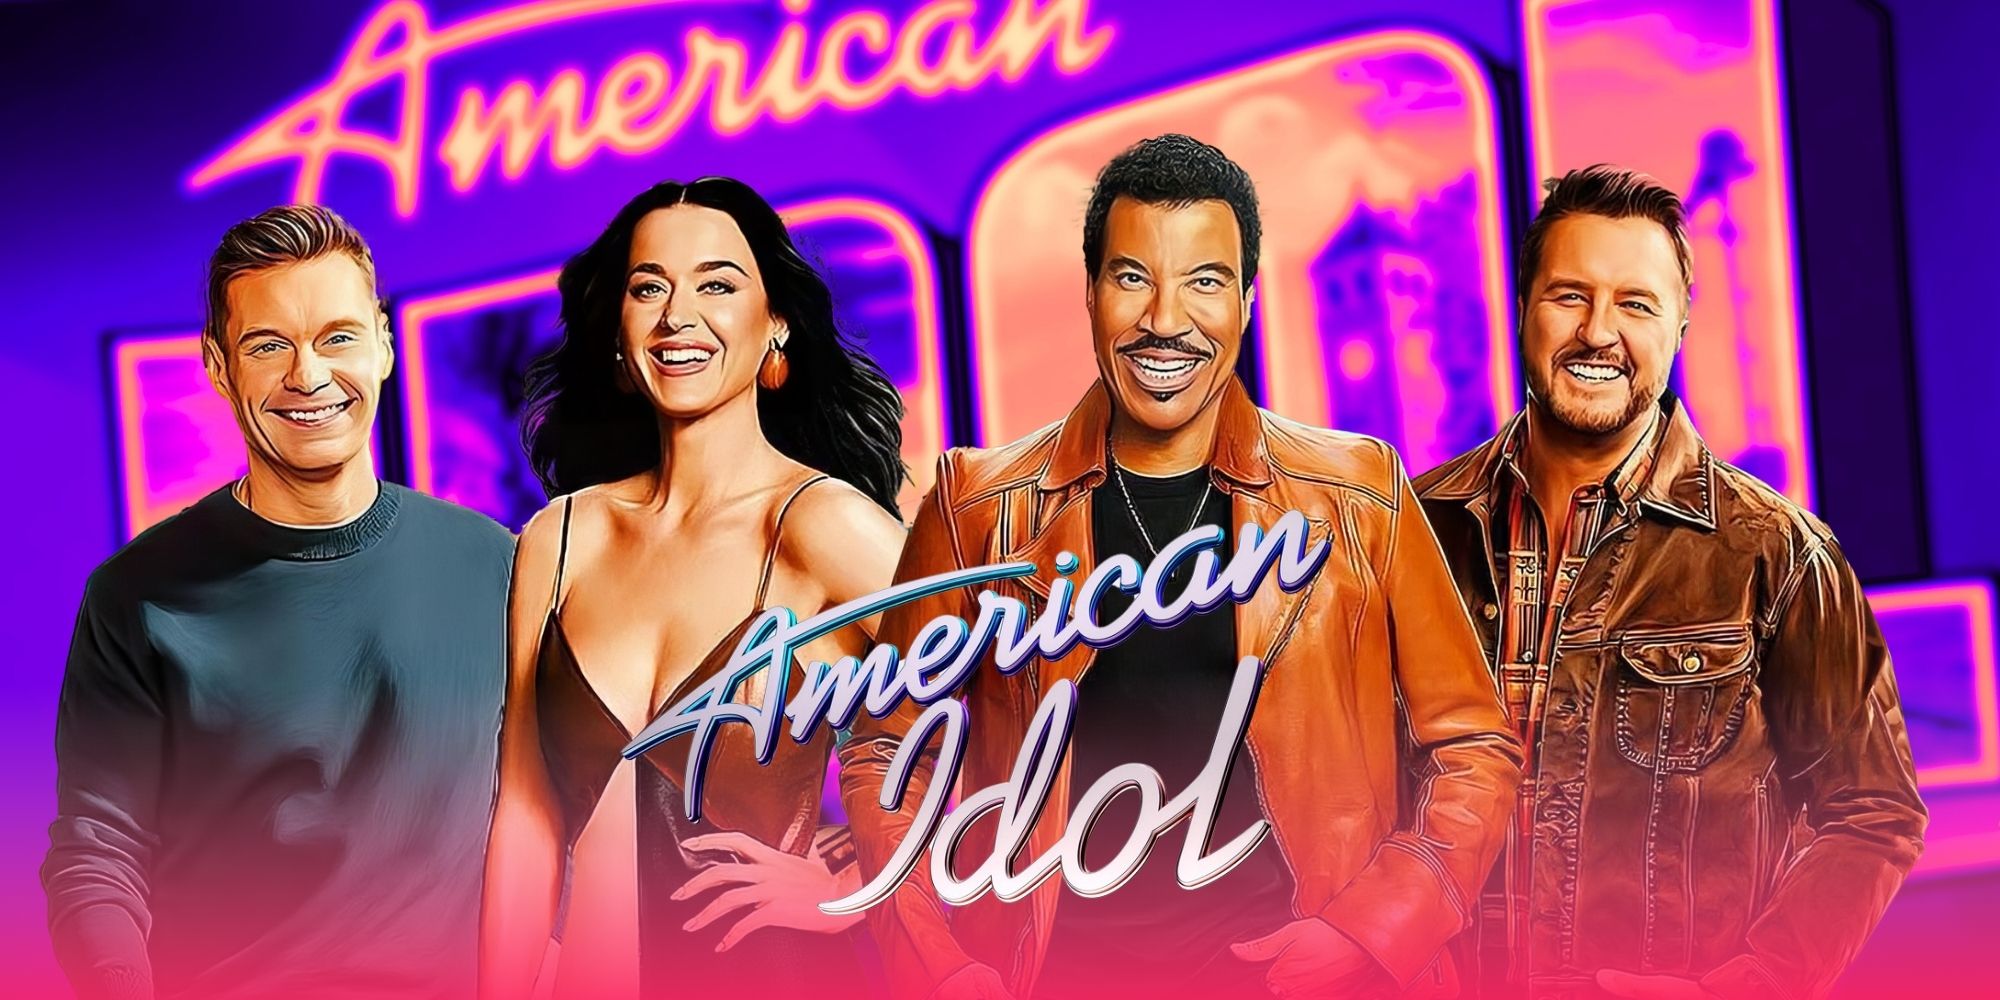 Temporada 23 de American Idol renovada por ABC ya que el reemplazo de Katy Perry sigue siendo un misterio